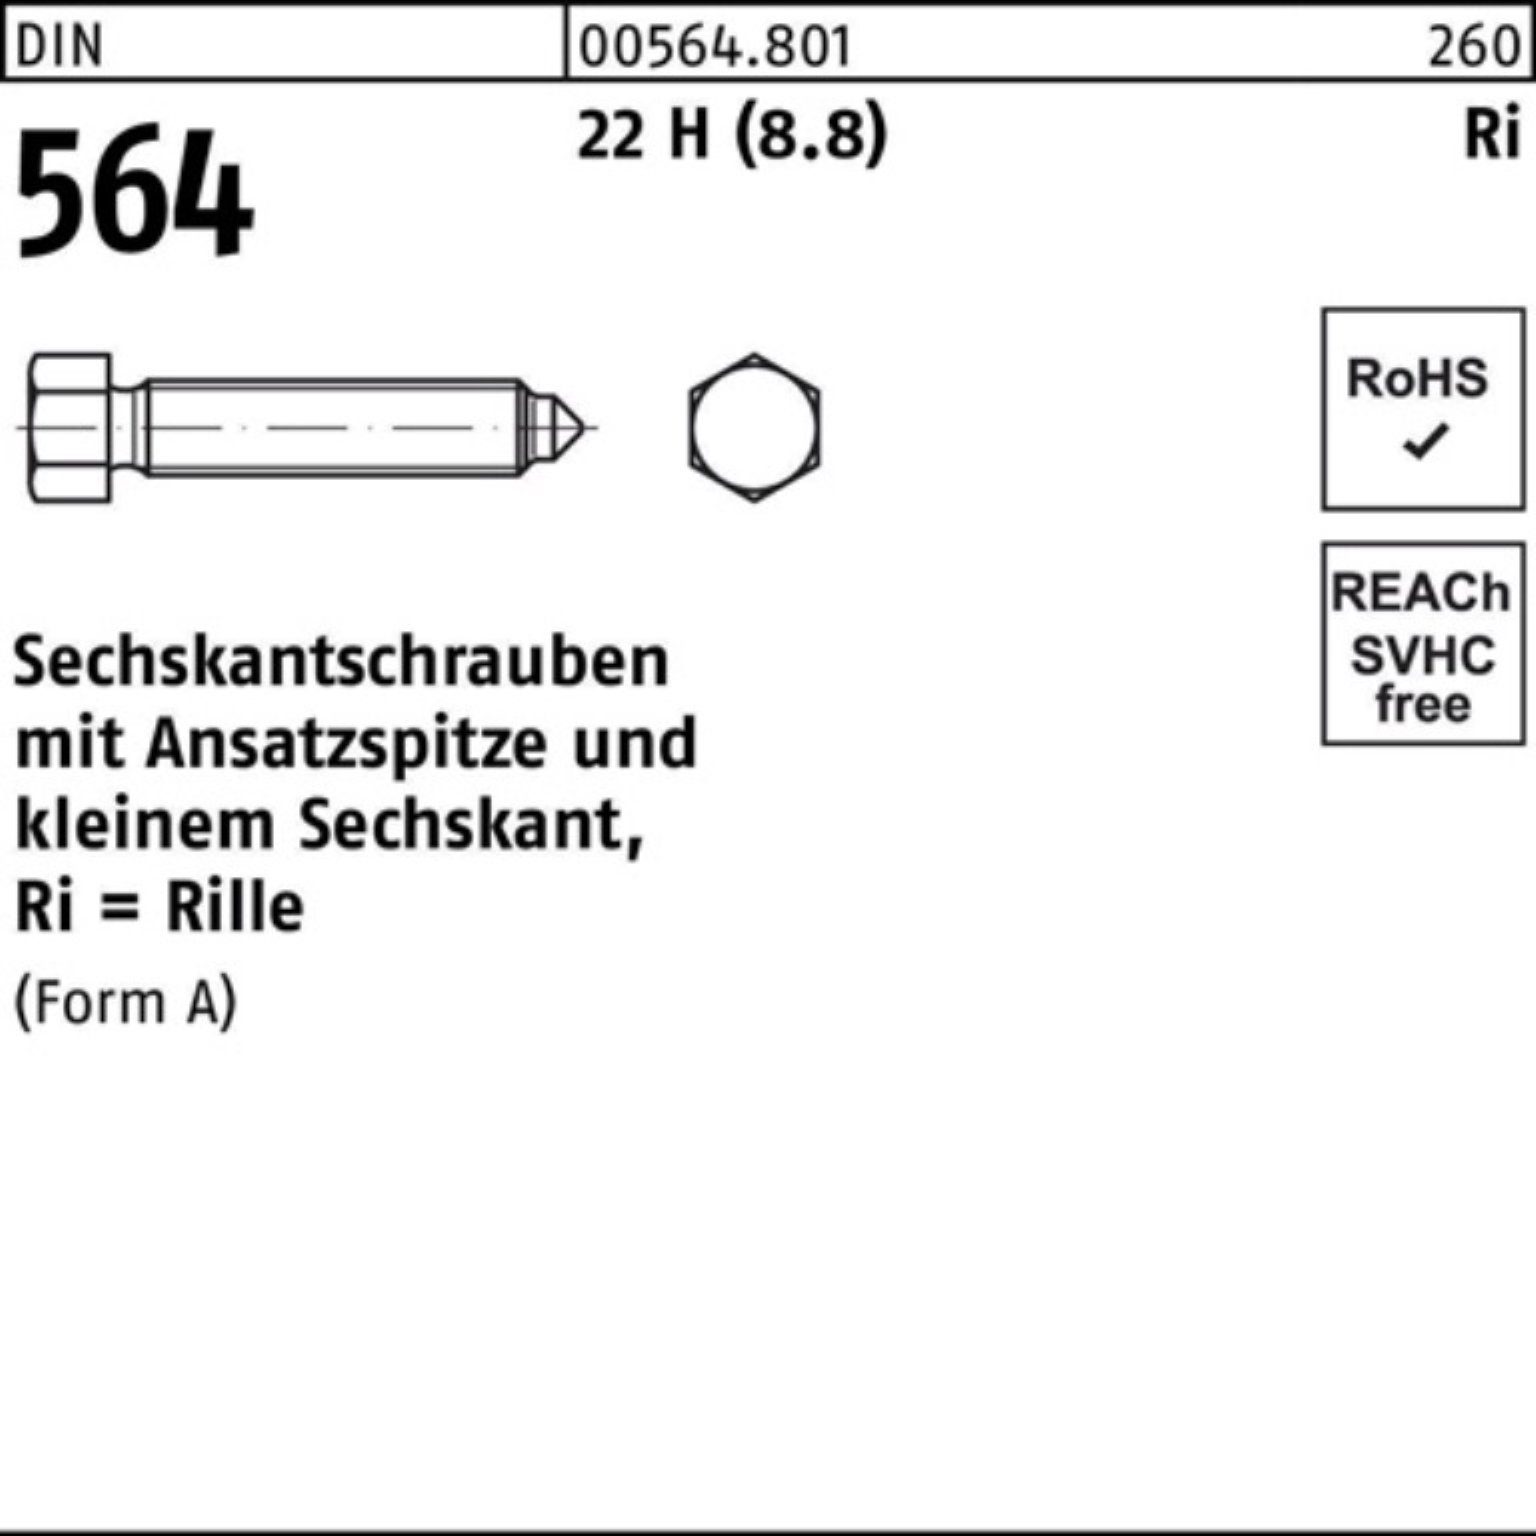 Reyher Sechskantschraube 100er Pack Sechskantschraube DIN 564 Ansatzspitze AM 8x 30 22 H (8.8)